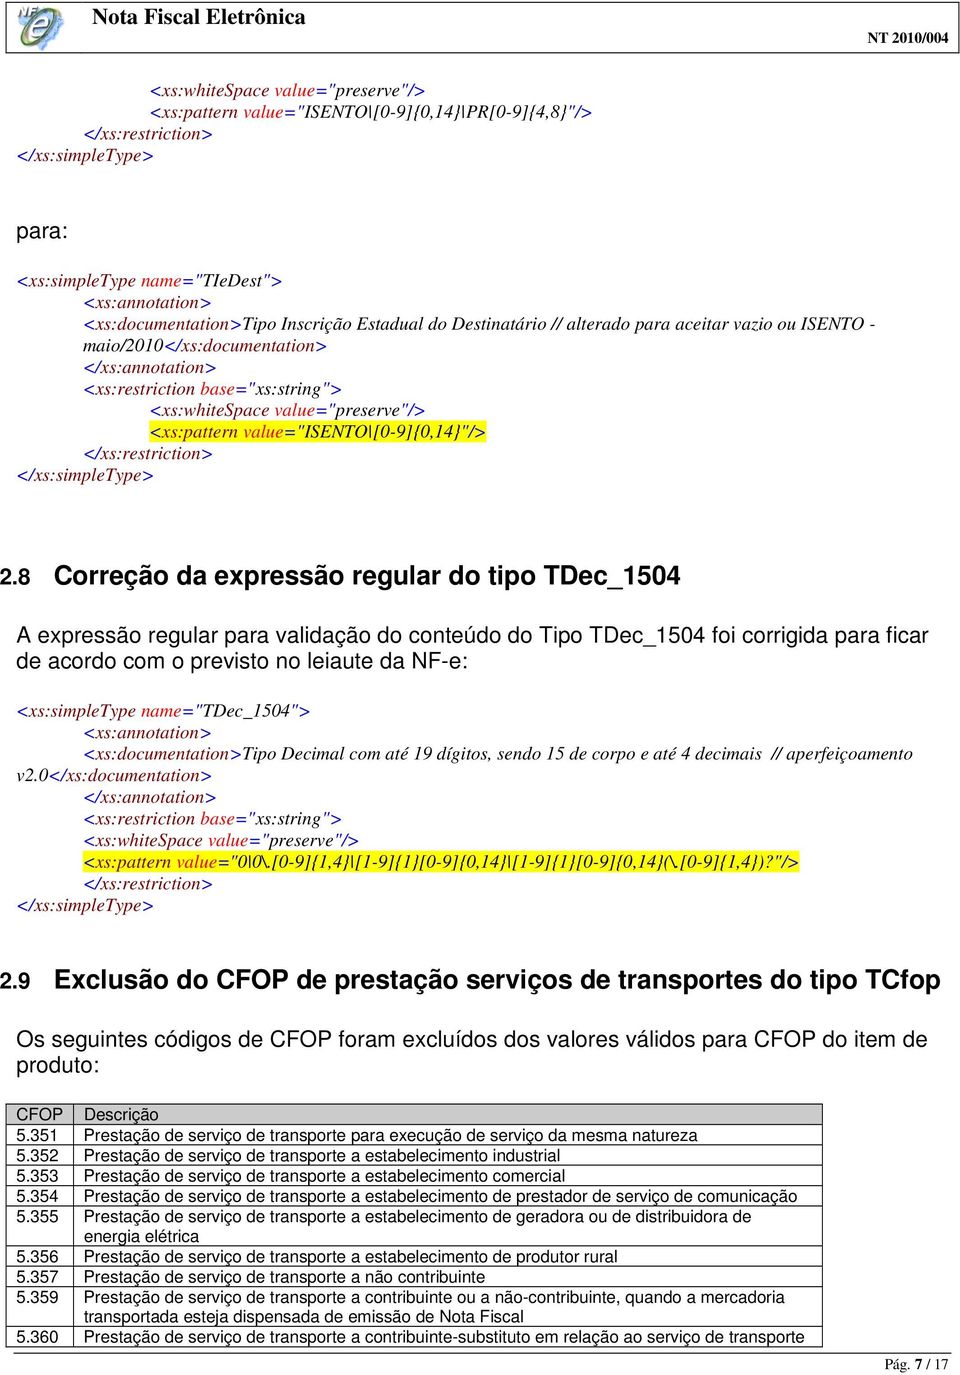 8 Correção da expressão regular do tipo TDec_1504 A expressão regular para validação do conteúdo do Tipo TDec_1504 foi corrigida para ficar de acordo com o previsto no leiaute da NF-e: <xs:simpletype